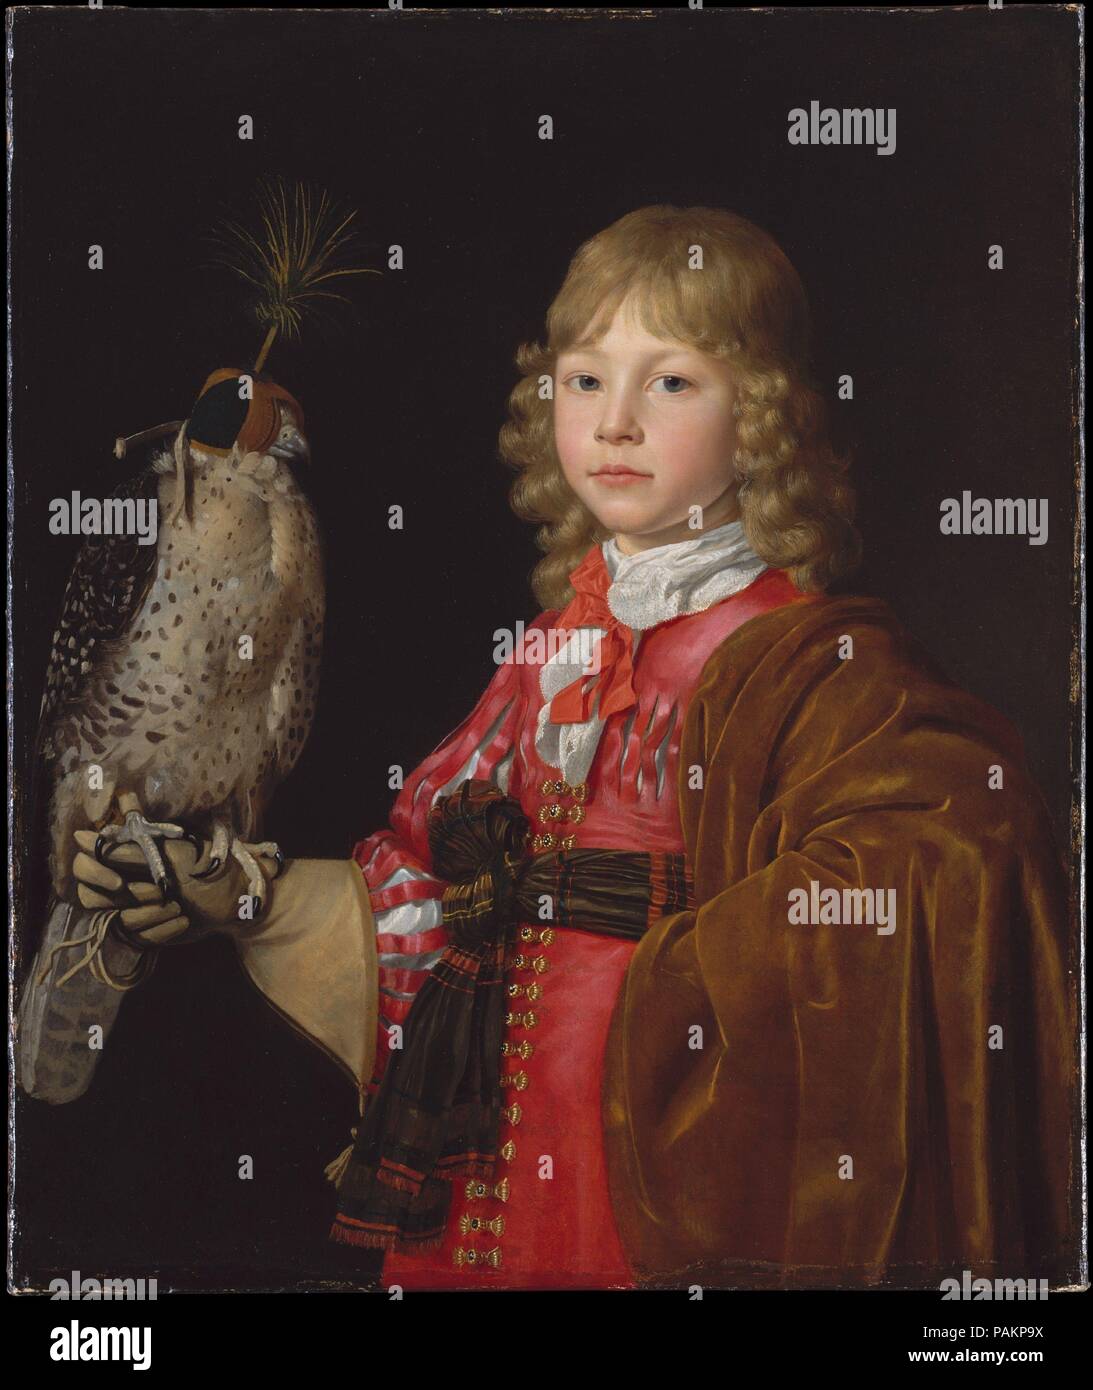 Portrait d'un garçon avec un pèlerin. Artiste : Wallerant Vaillant (flamand, Lille 1623-1677 Amsterdam). Dimensions : 29 3/4 x 25 in. (75,6 x 63,5 cm). Originaire de Lille, Vaillant à Anvers et formés par le milieu-1650s est bien établi comme portraitiste à Amsterdam. L'artiste est également connu comme un pionnier de la gravure à la gravure. En néerlandais et flamand portraits, pèlerins font habituellement référence à la chasse comme un sport aristocratique. Musée : Metropolitan Museum of Art, New York, USA. Banque D'Images